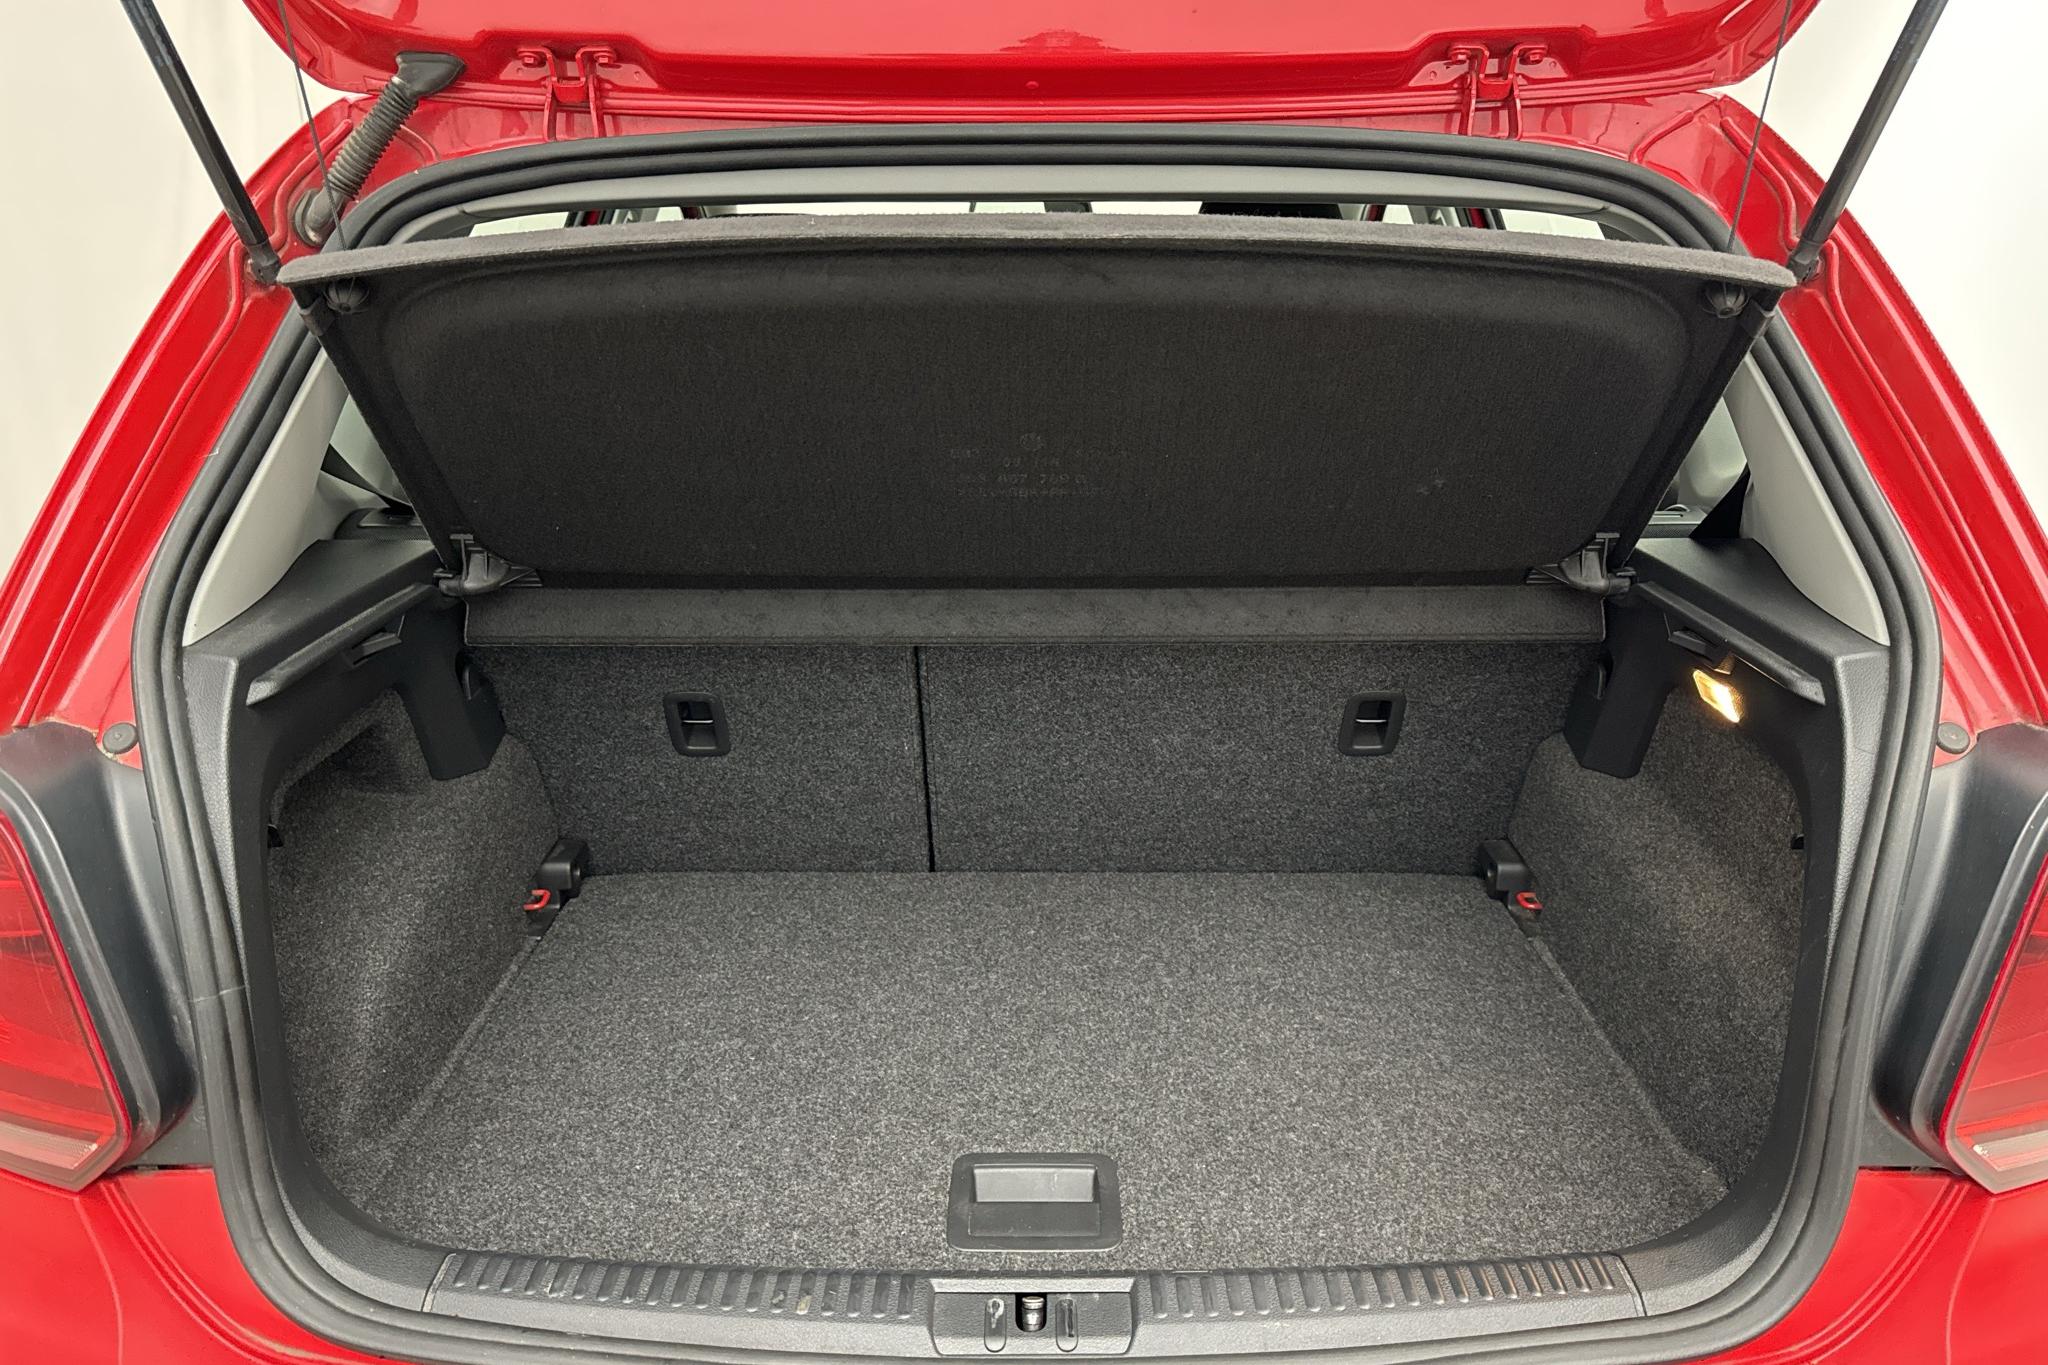 VW Polo 1.2 TSI 5dr (90hk) - 16 300 km - Manual - red - 2016